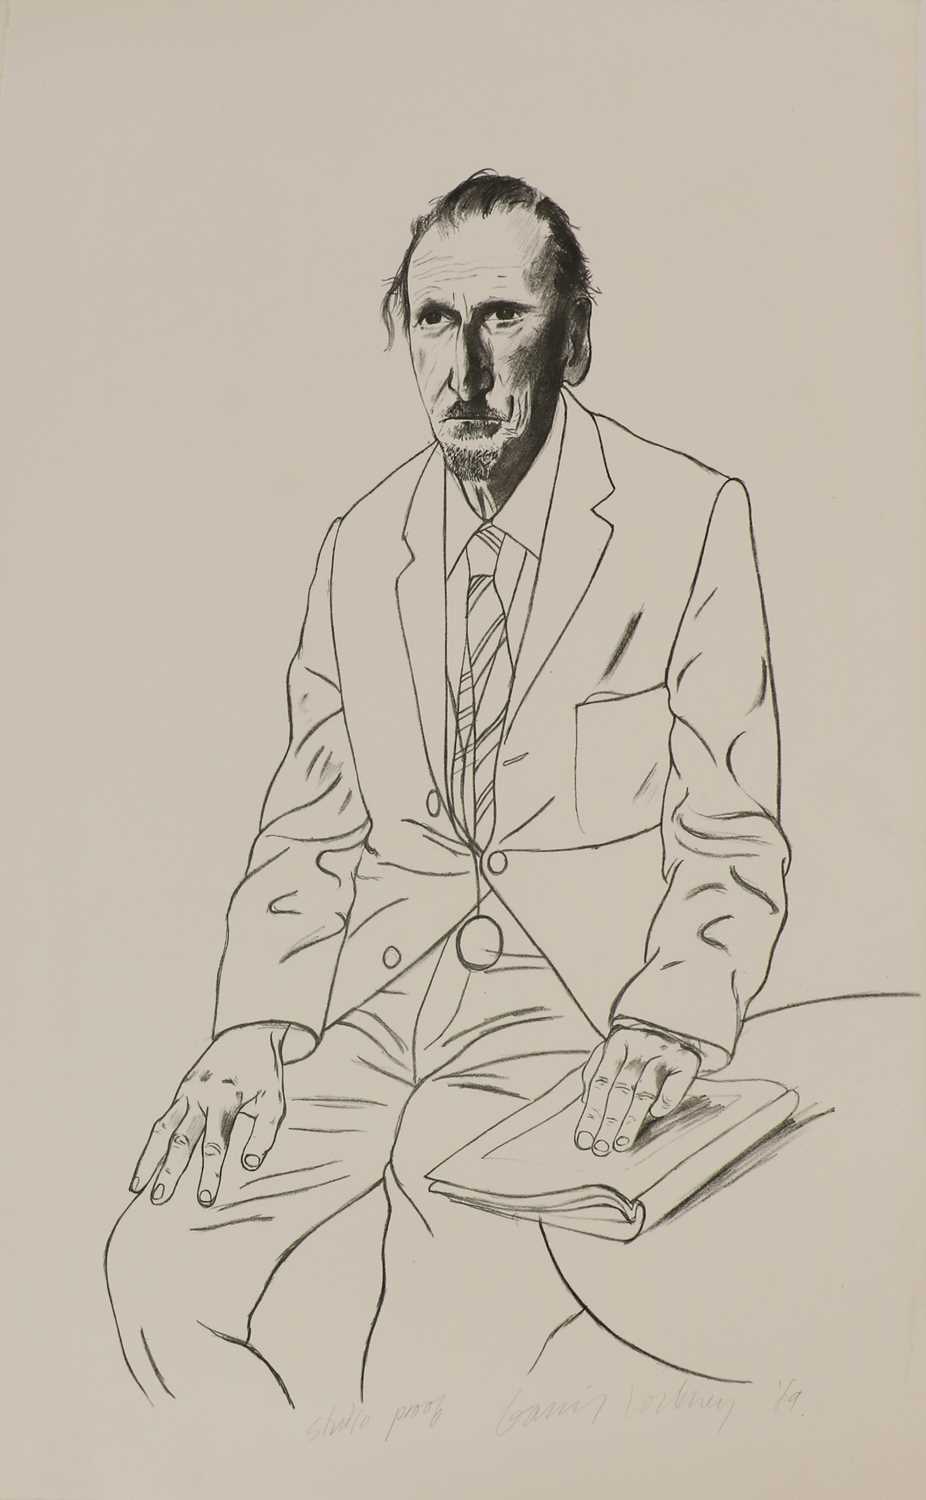 Lot 295 - David Hockney RA (b.1937)